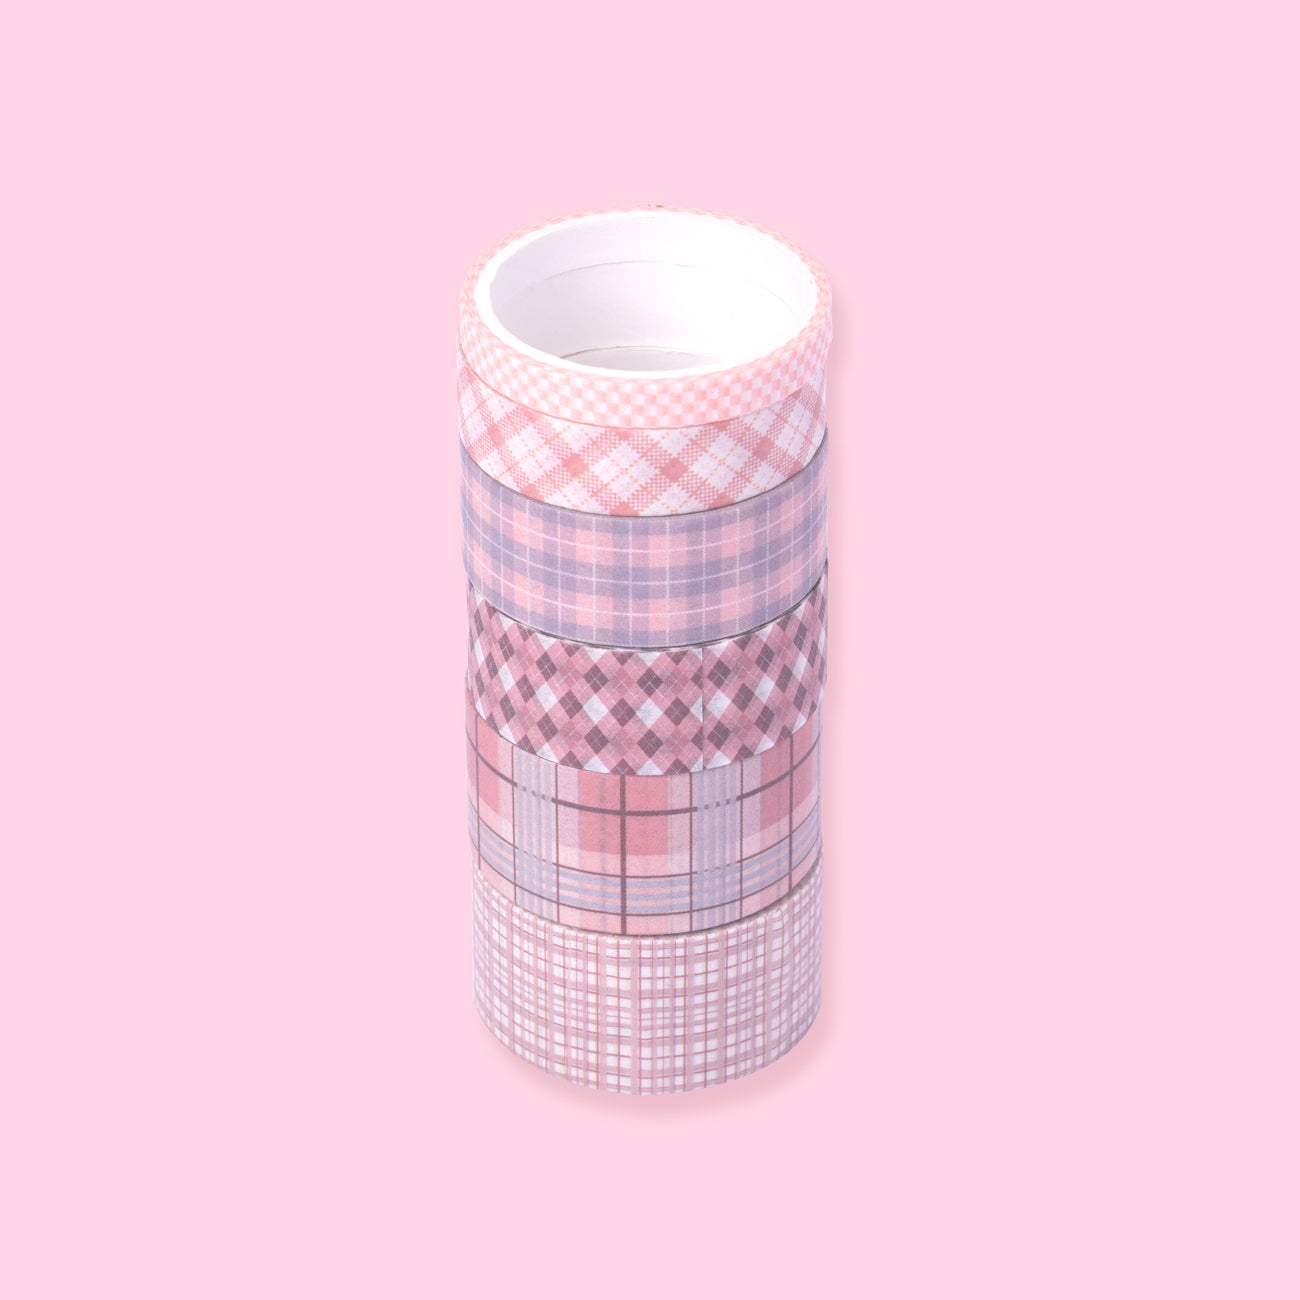 Grid Pattern Washi Tape - Set of 6 - Pink